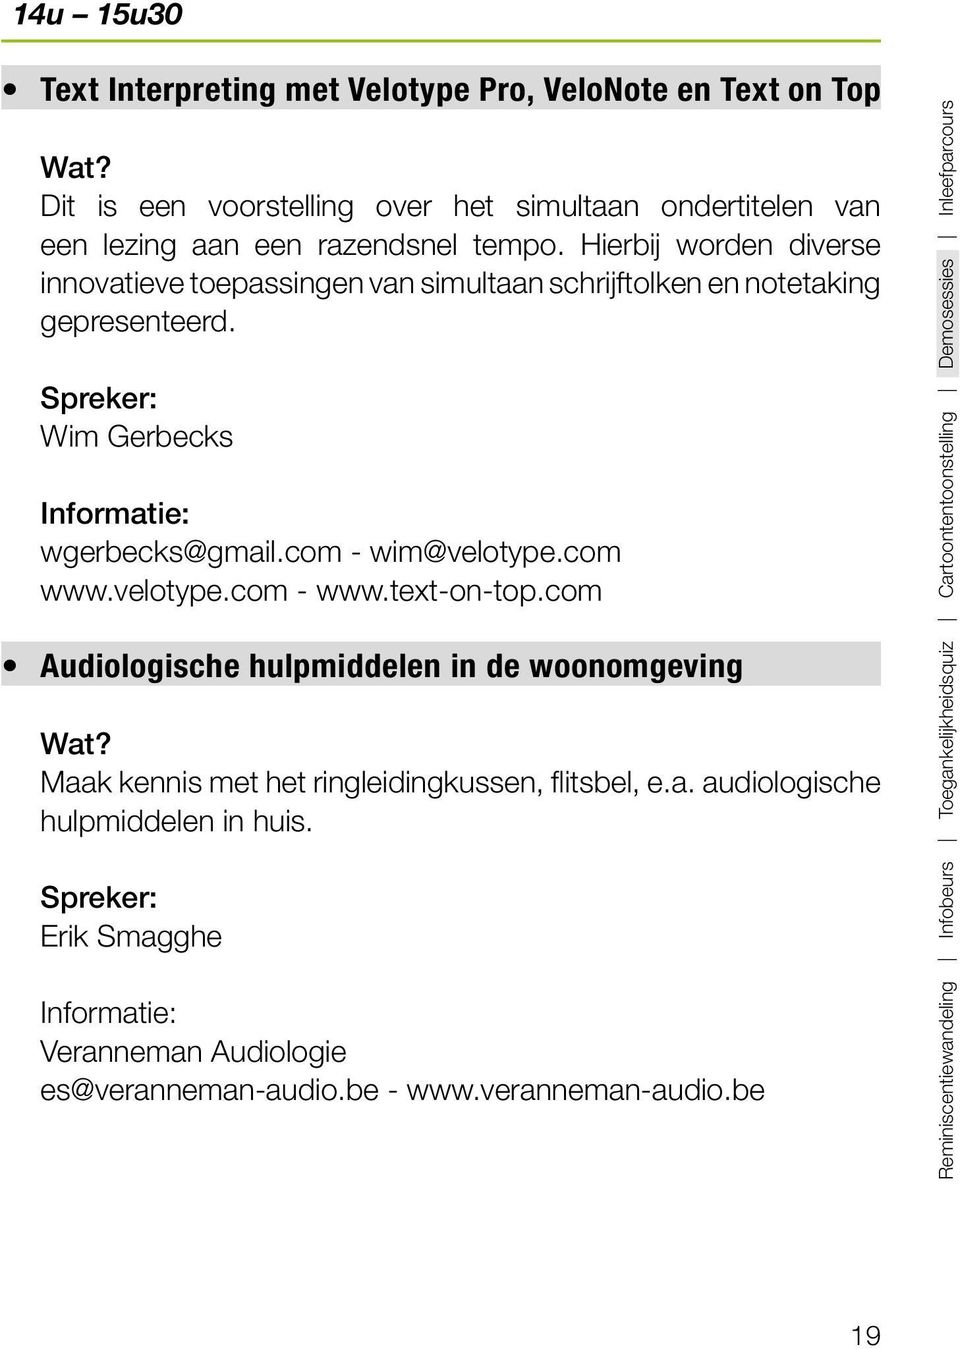 velotype.com - www.text-on-top.com Audiologische hulpmiddelen in de woonomgeving Maak kennis met het ringleidingkussen, flitsbel, e.a. audiologische hulpmiddelen in huis.